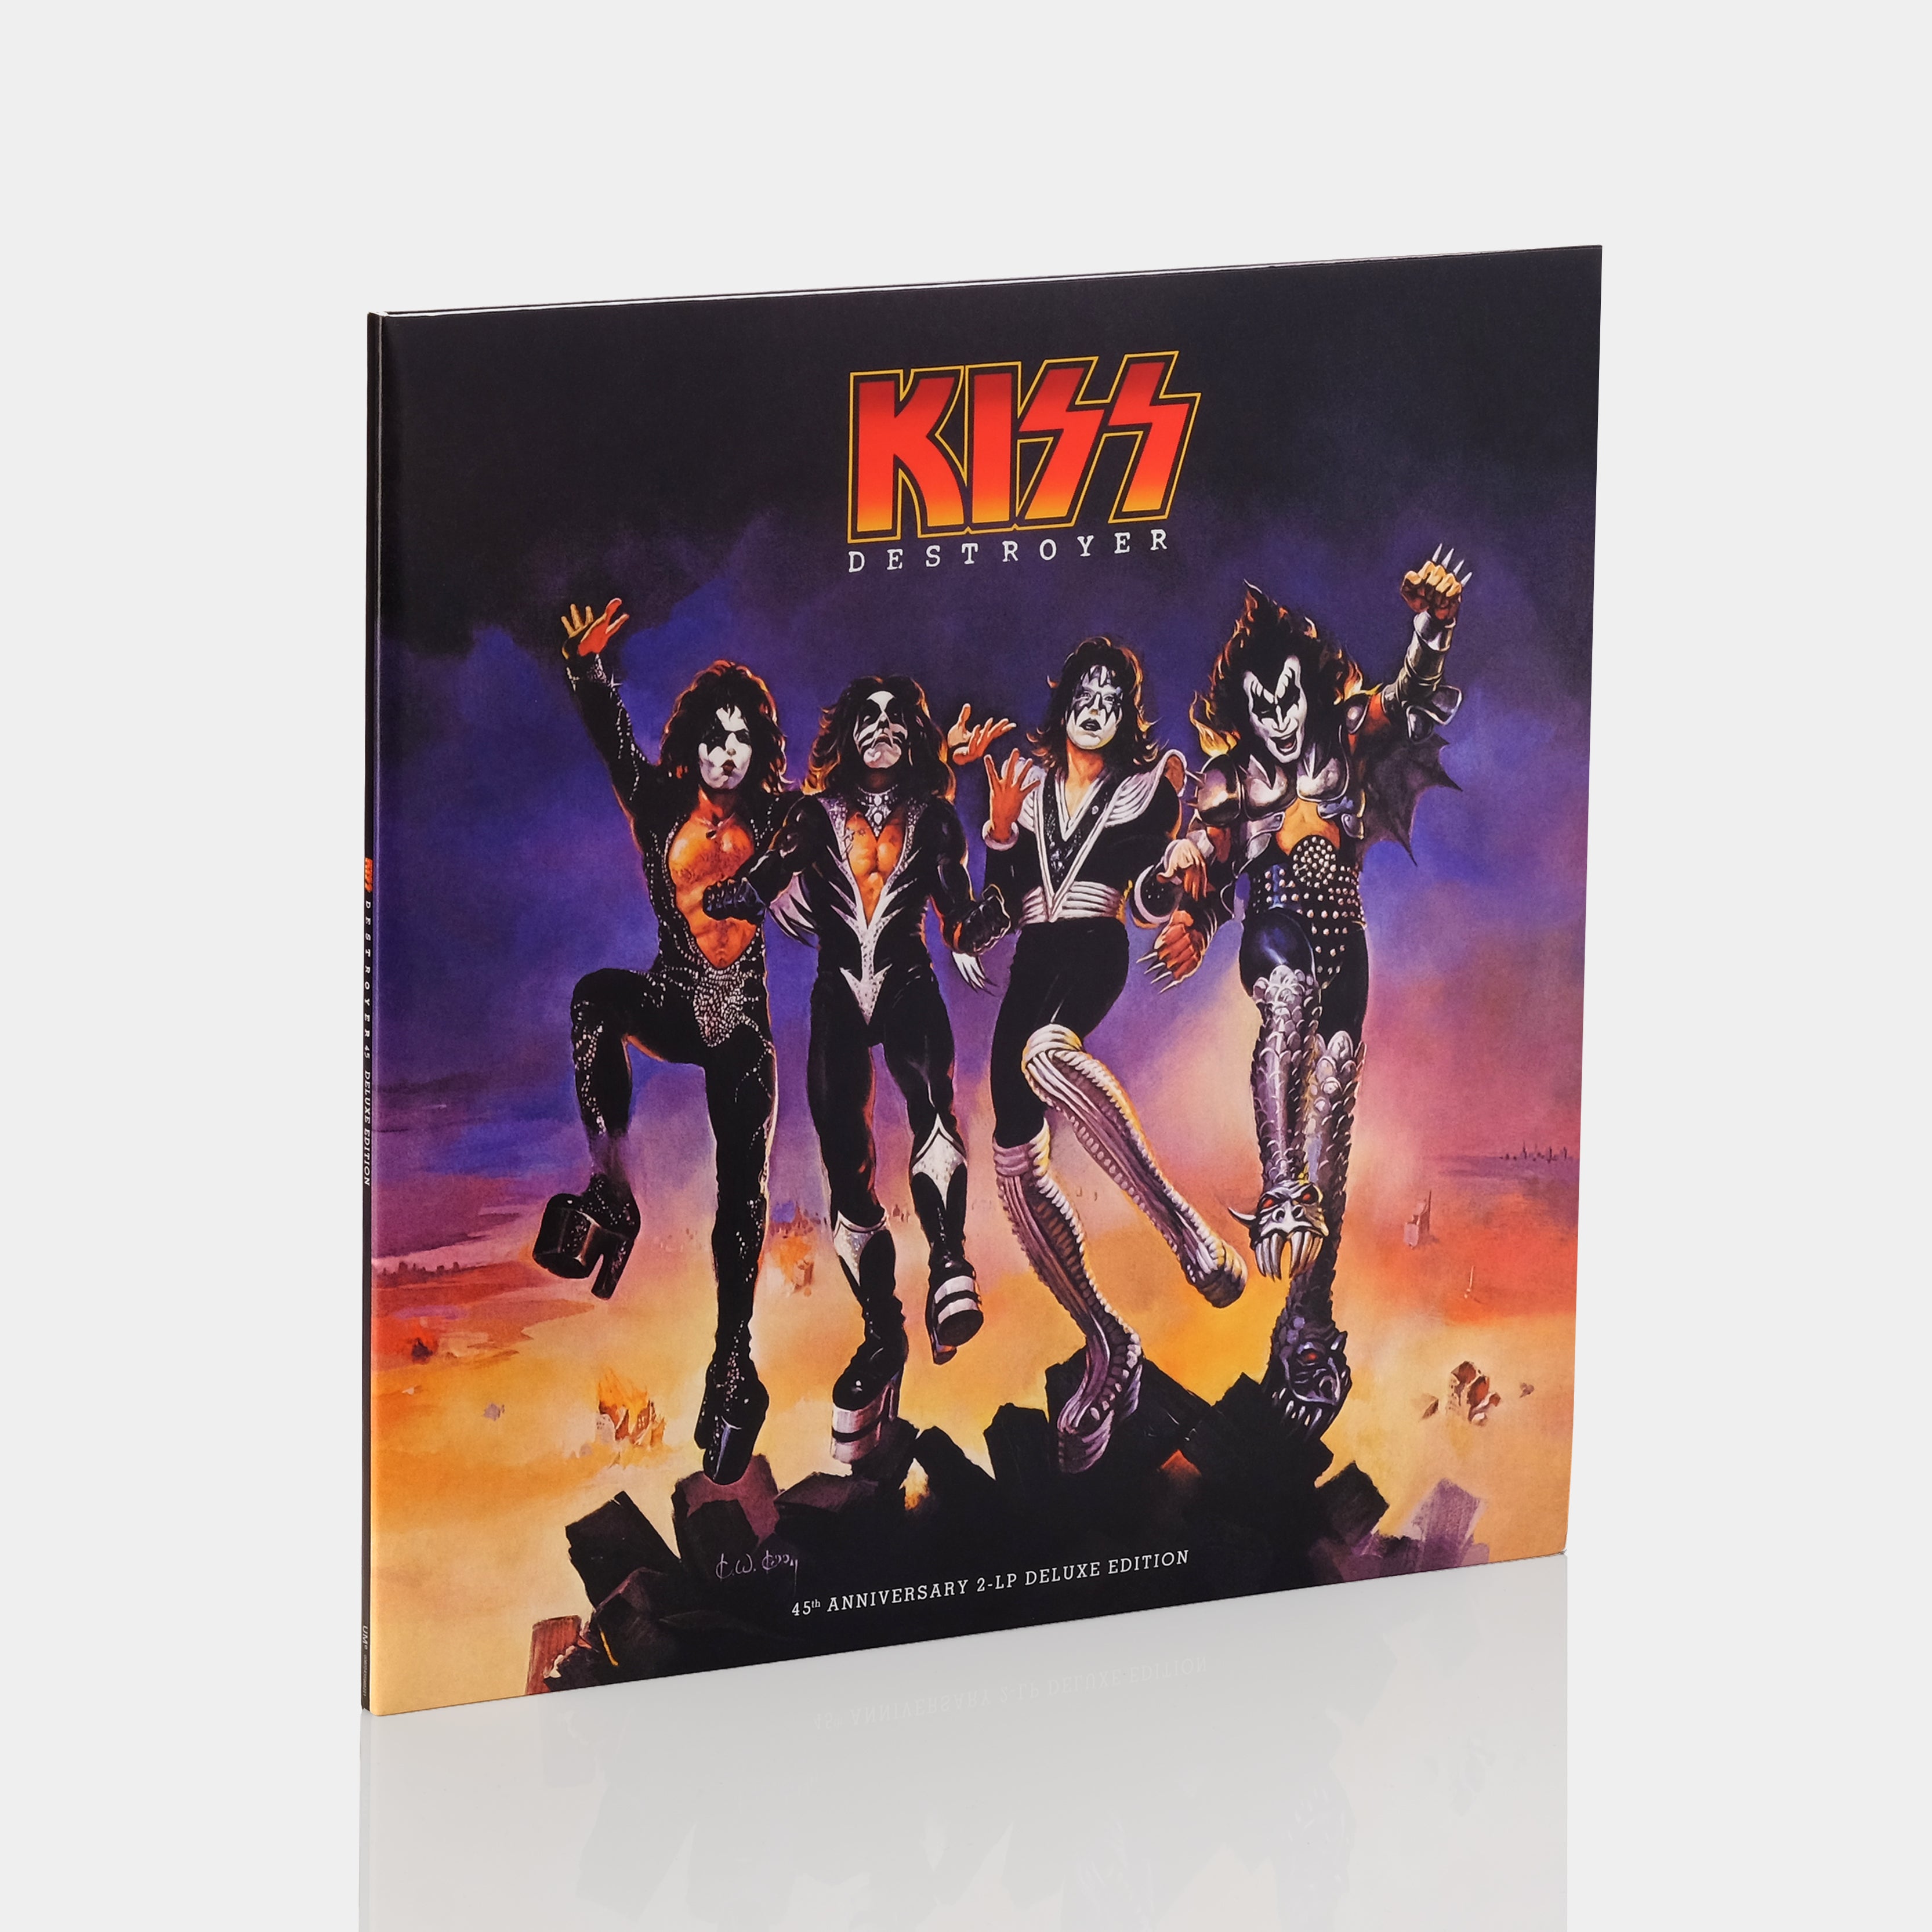 KISS - Destroyer 2xLP Vinyl Record